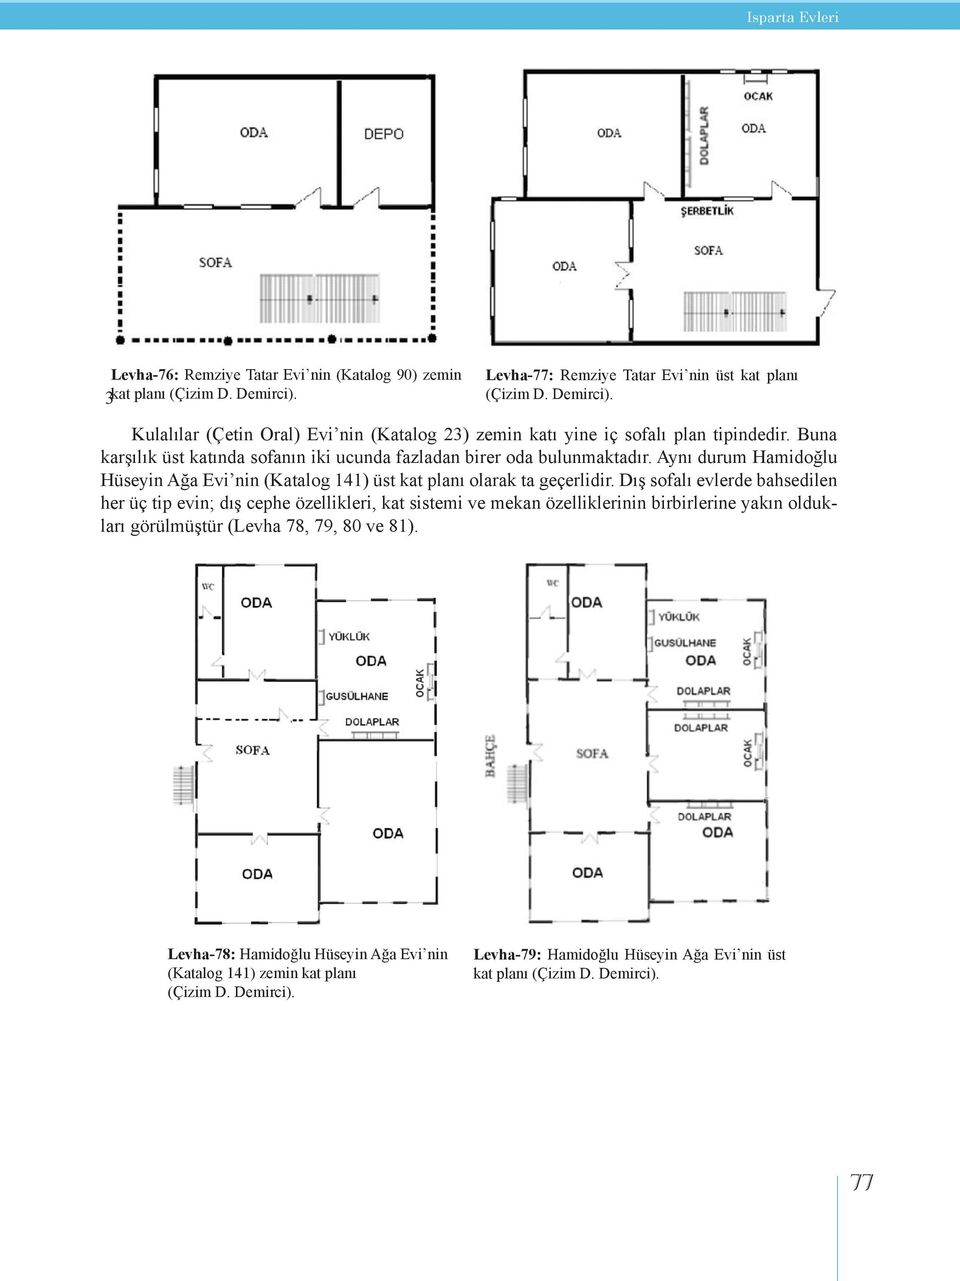 Dış sofalı evlerde bahsedilen her üç tip evin; dış cephe özellikleri, kat sistemi ve mekan özelliklerinin birbirlerine yakın oldukları görülmüştür (Levha 78, 79, 80 ve 81).